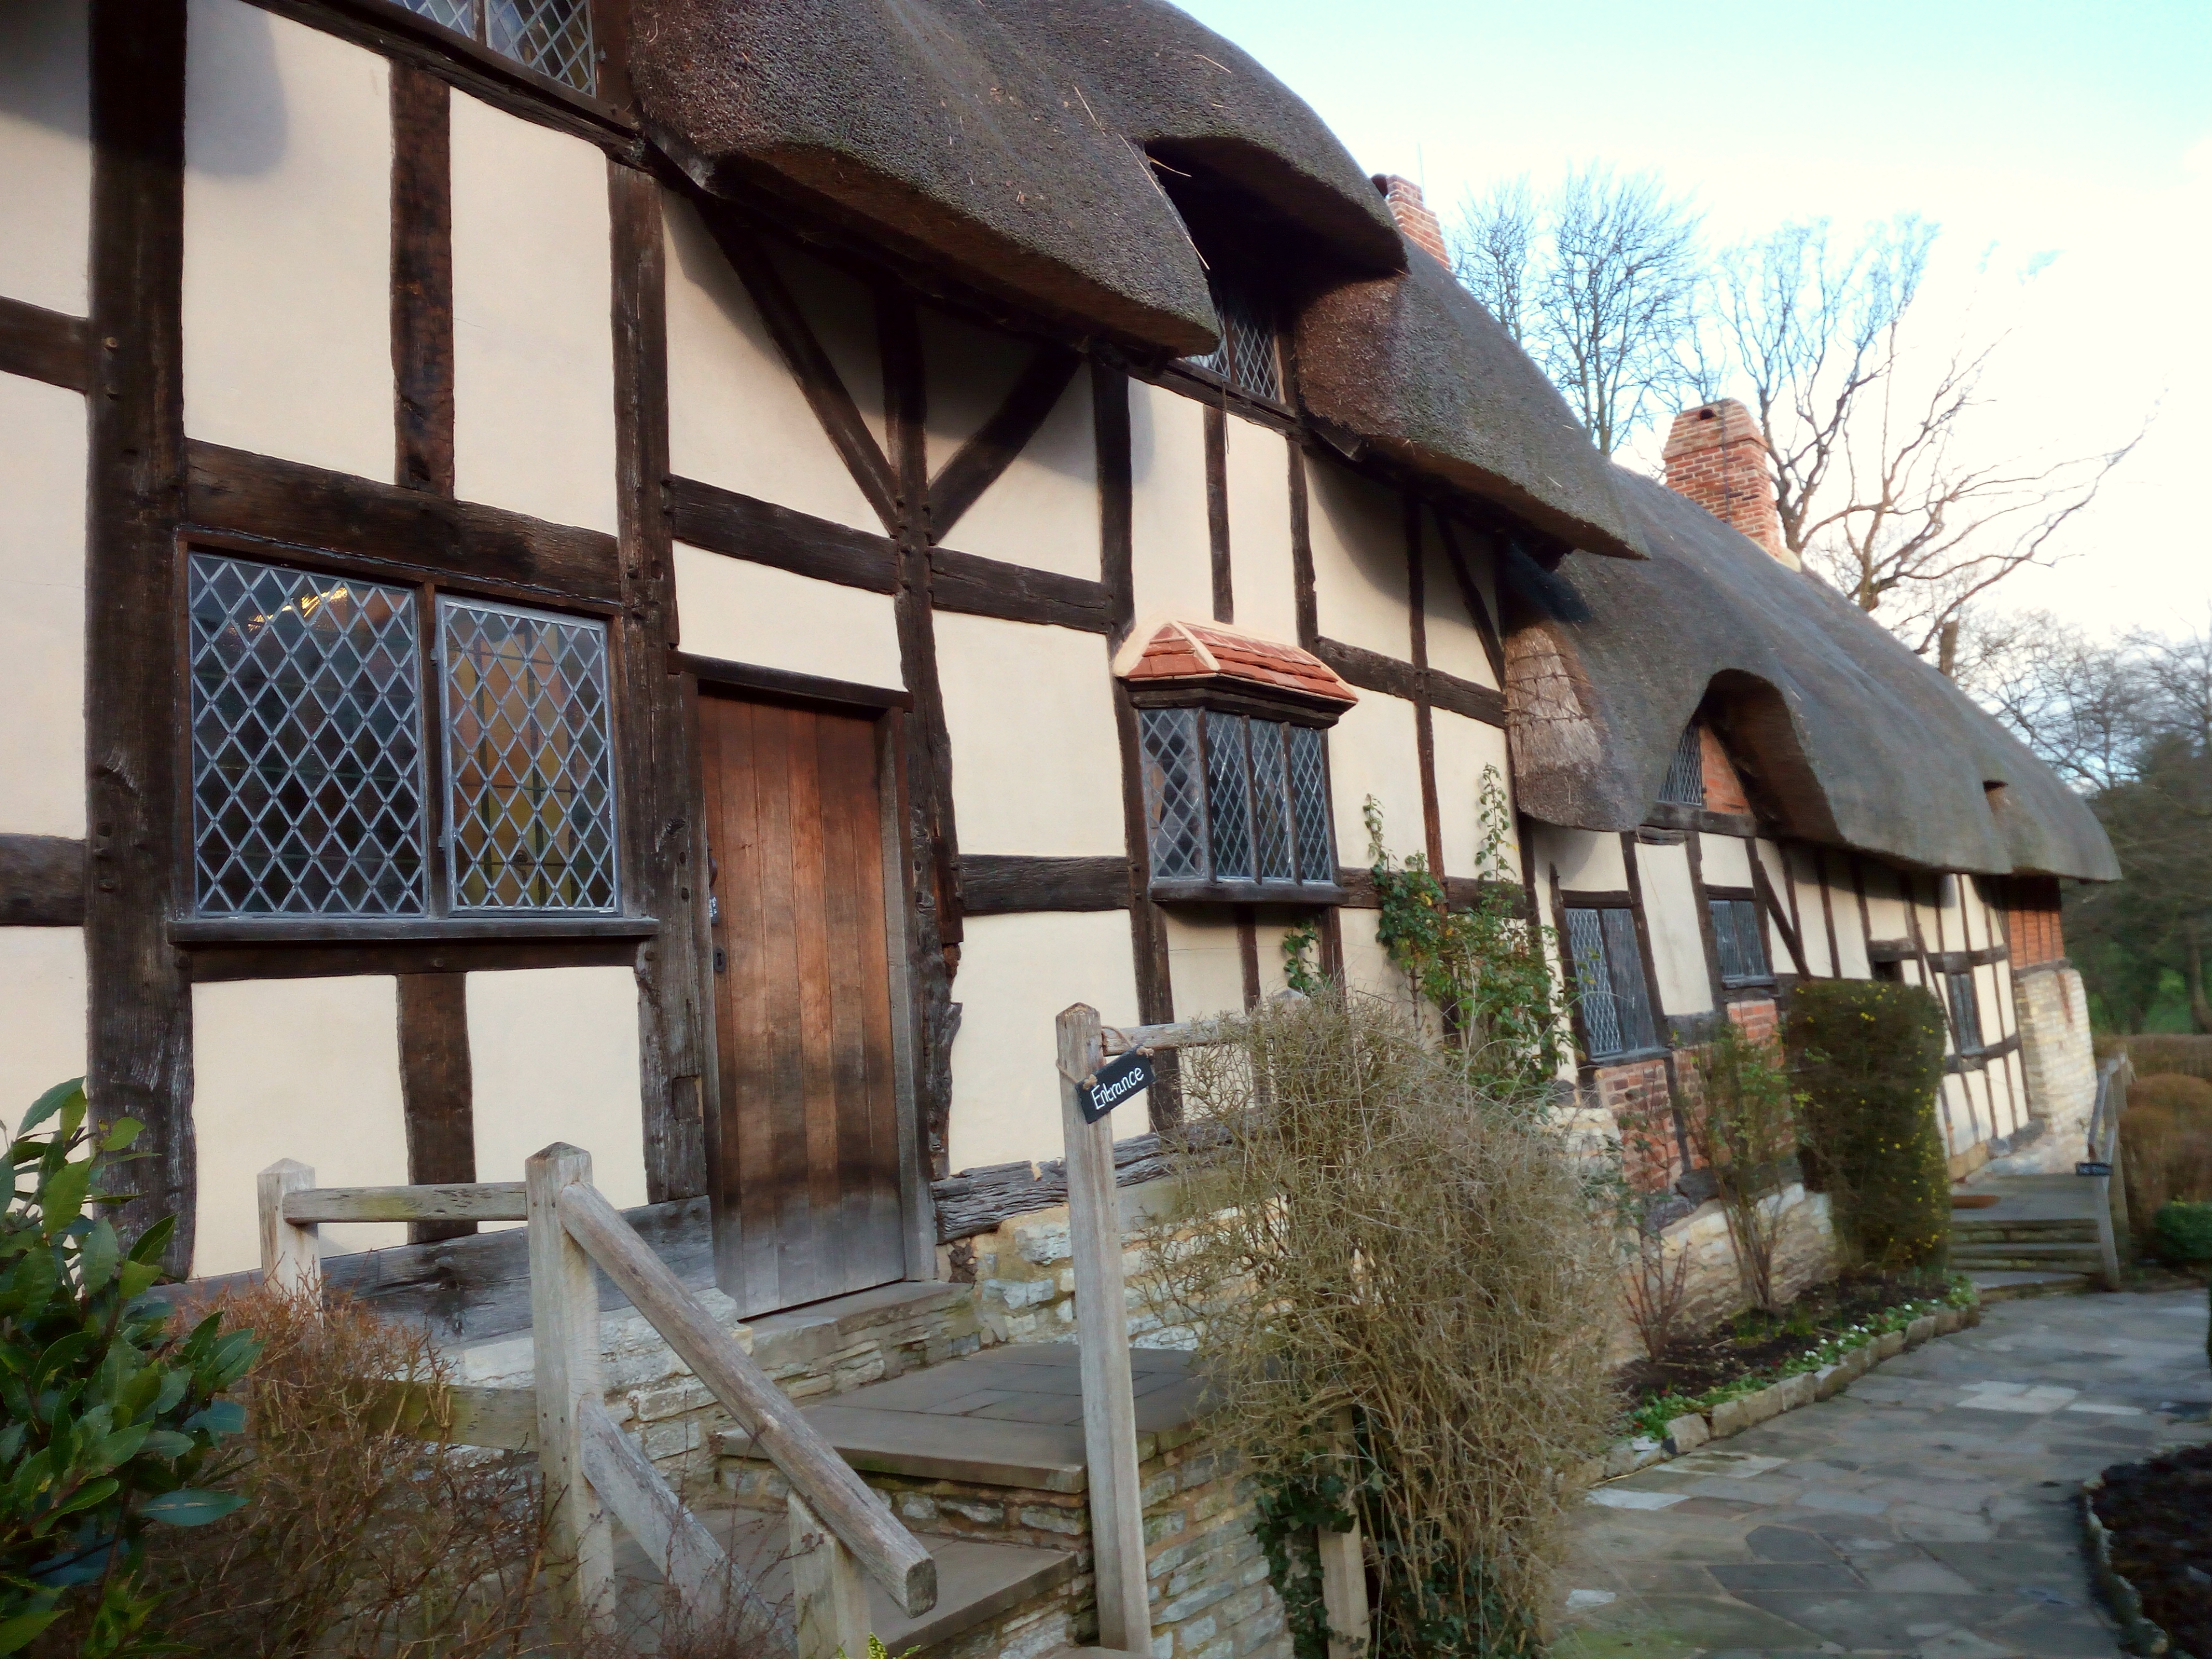 Anne Hathaway's Cottage - Stratford Upon Avon